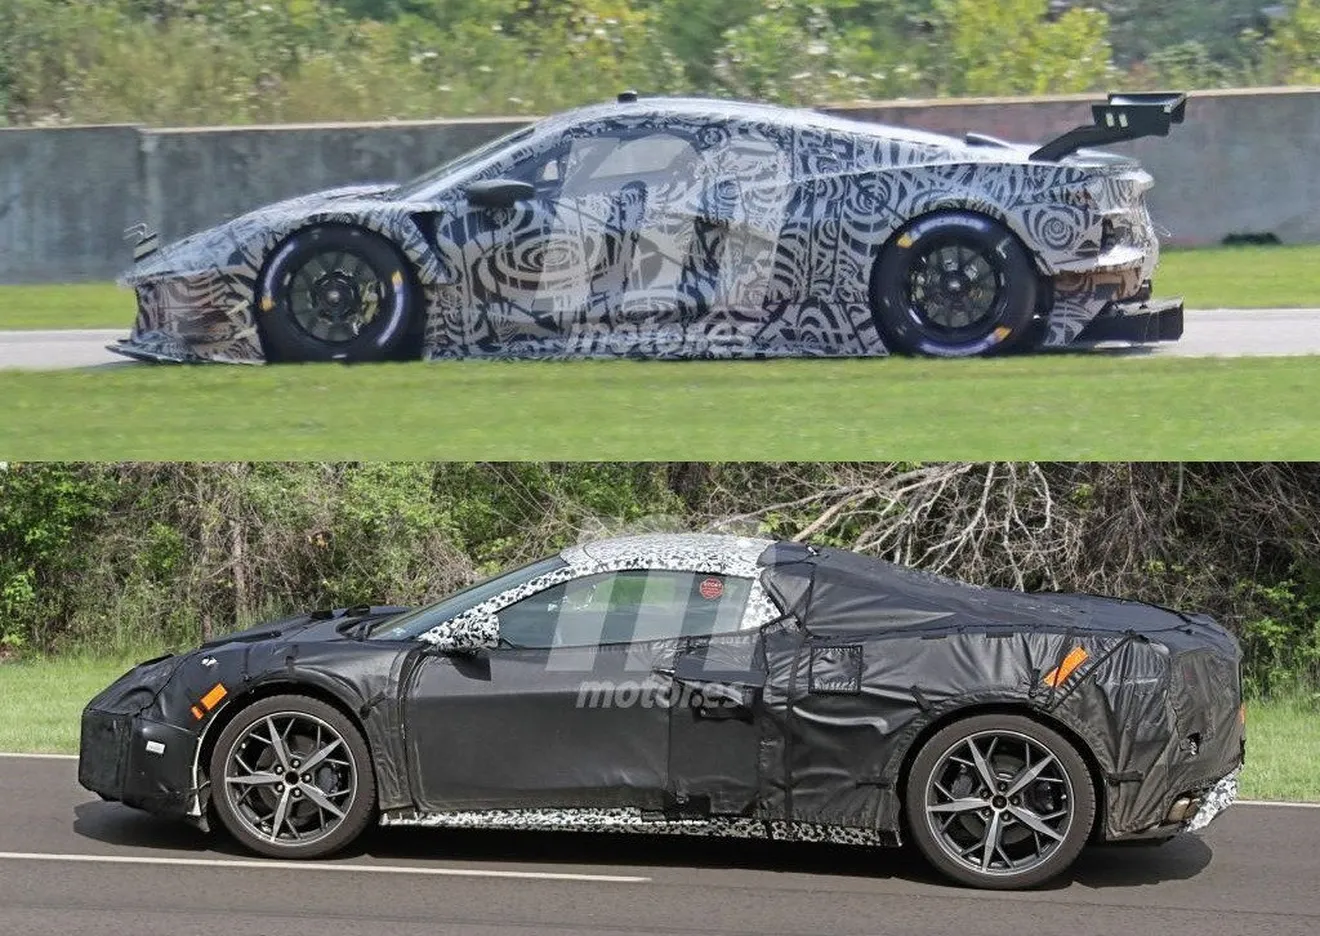 El Corvette C8 revelado gracias a la versión C8.R GTE de carreras